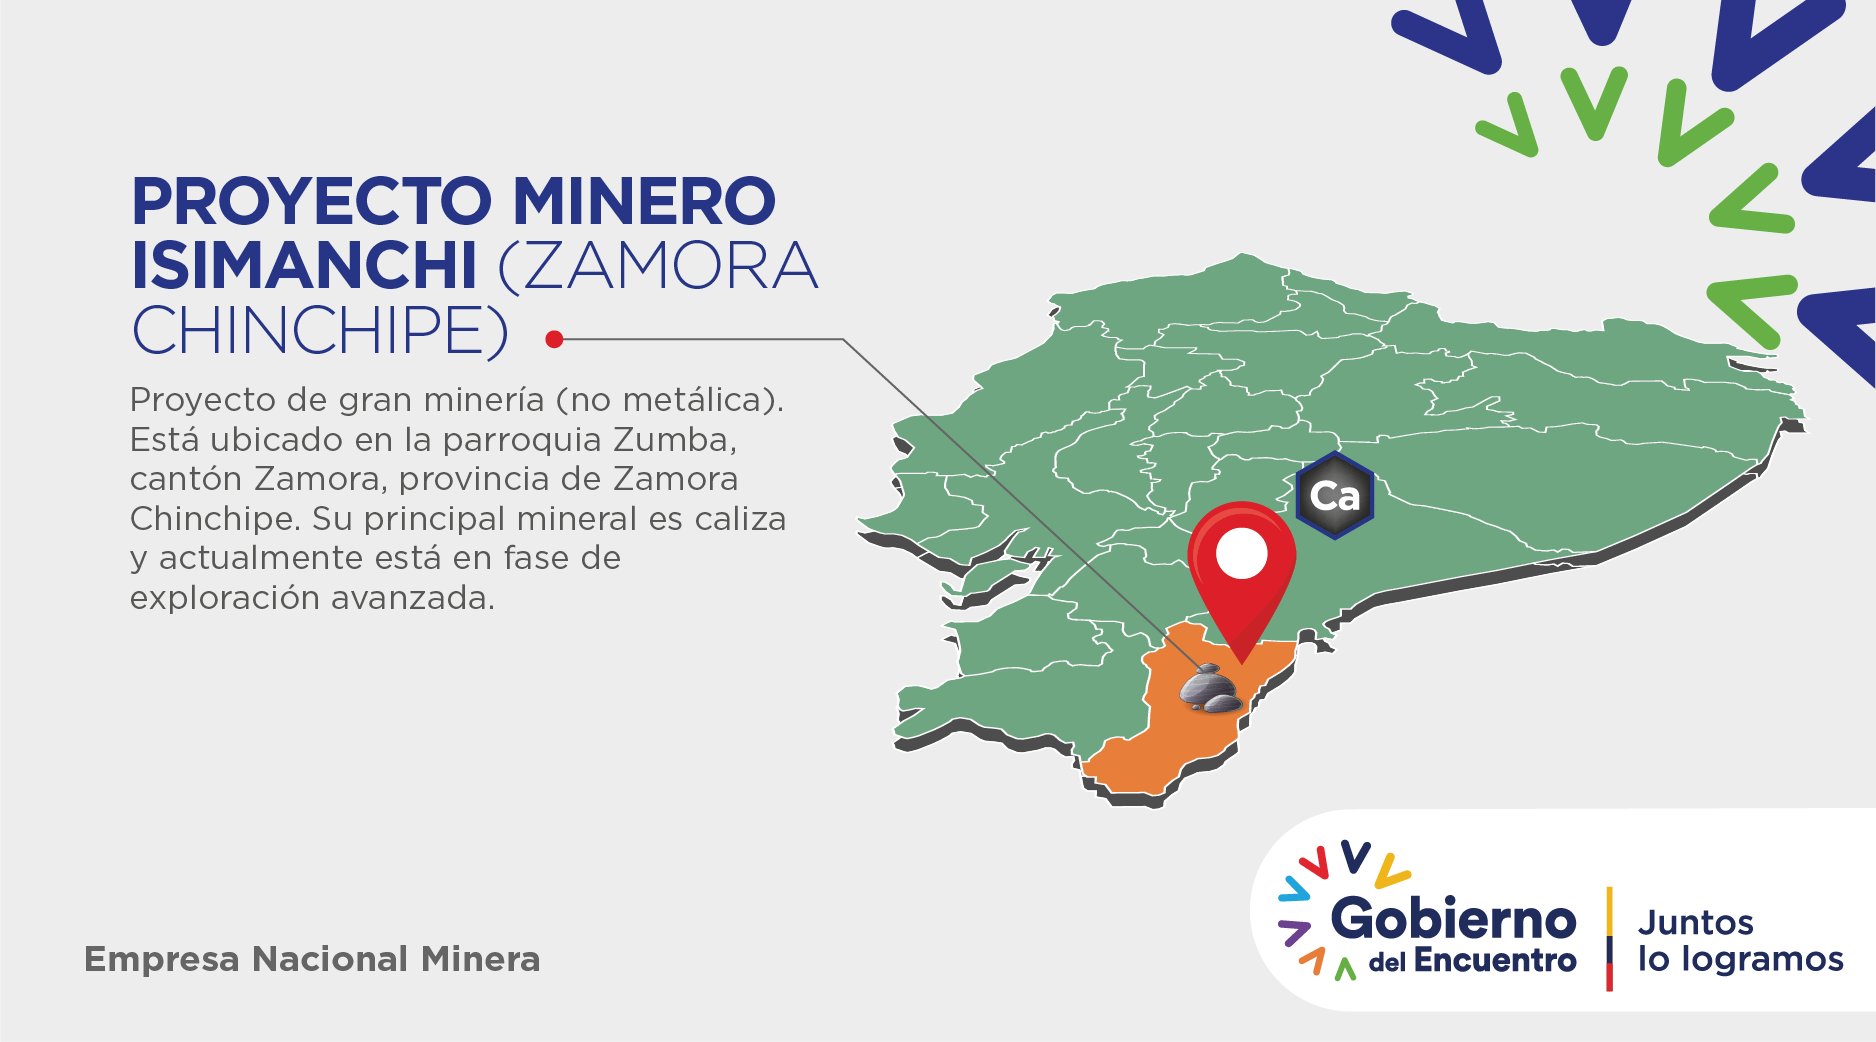 ENAMI-EP على تويتر: &quot;#EnamiDesarrolloSustentable | El proyecto minero  Isimanchi (Zamora Chinchipe) es un yacimiento de calizas que conforma el  Portafolio de proyectos de @ENAMIEP para el año 2021. Conoce detalles de  este